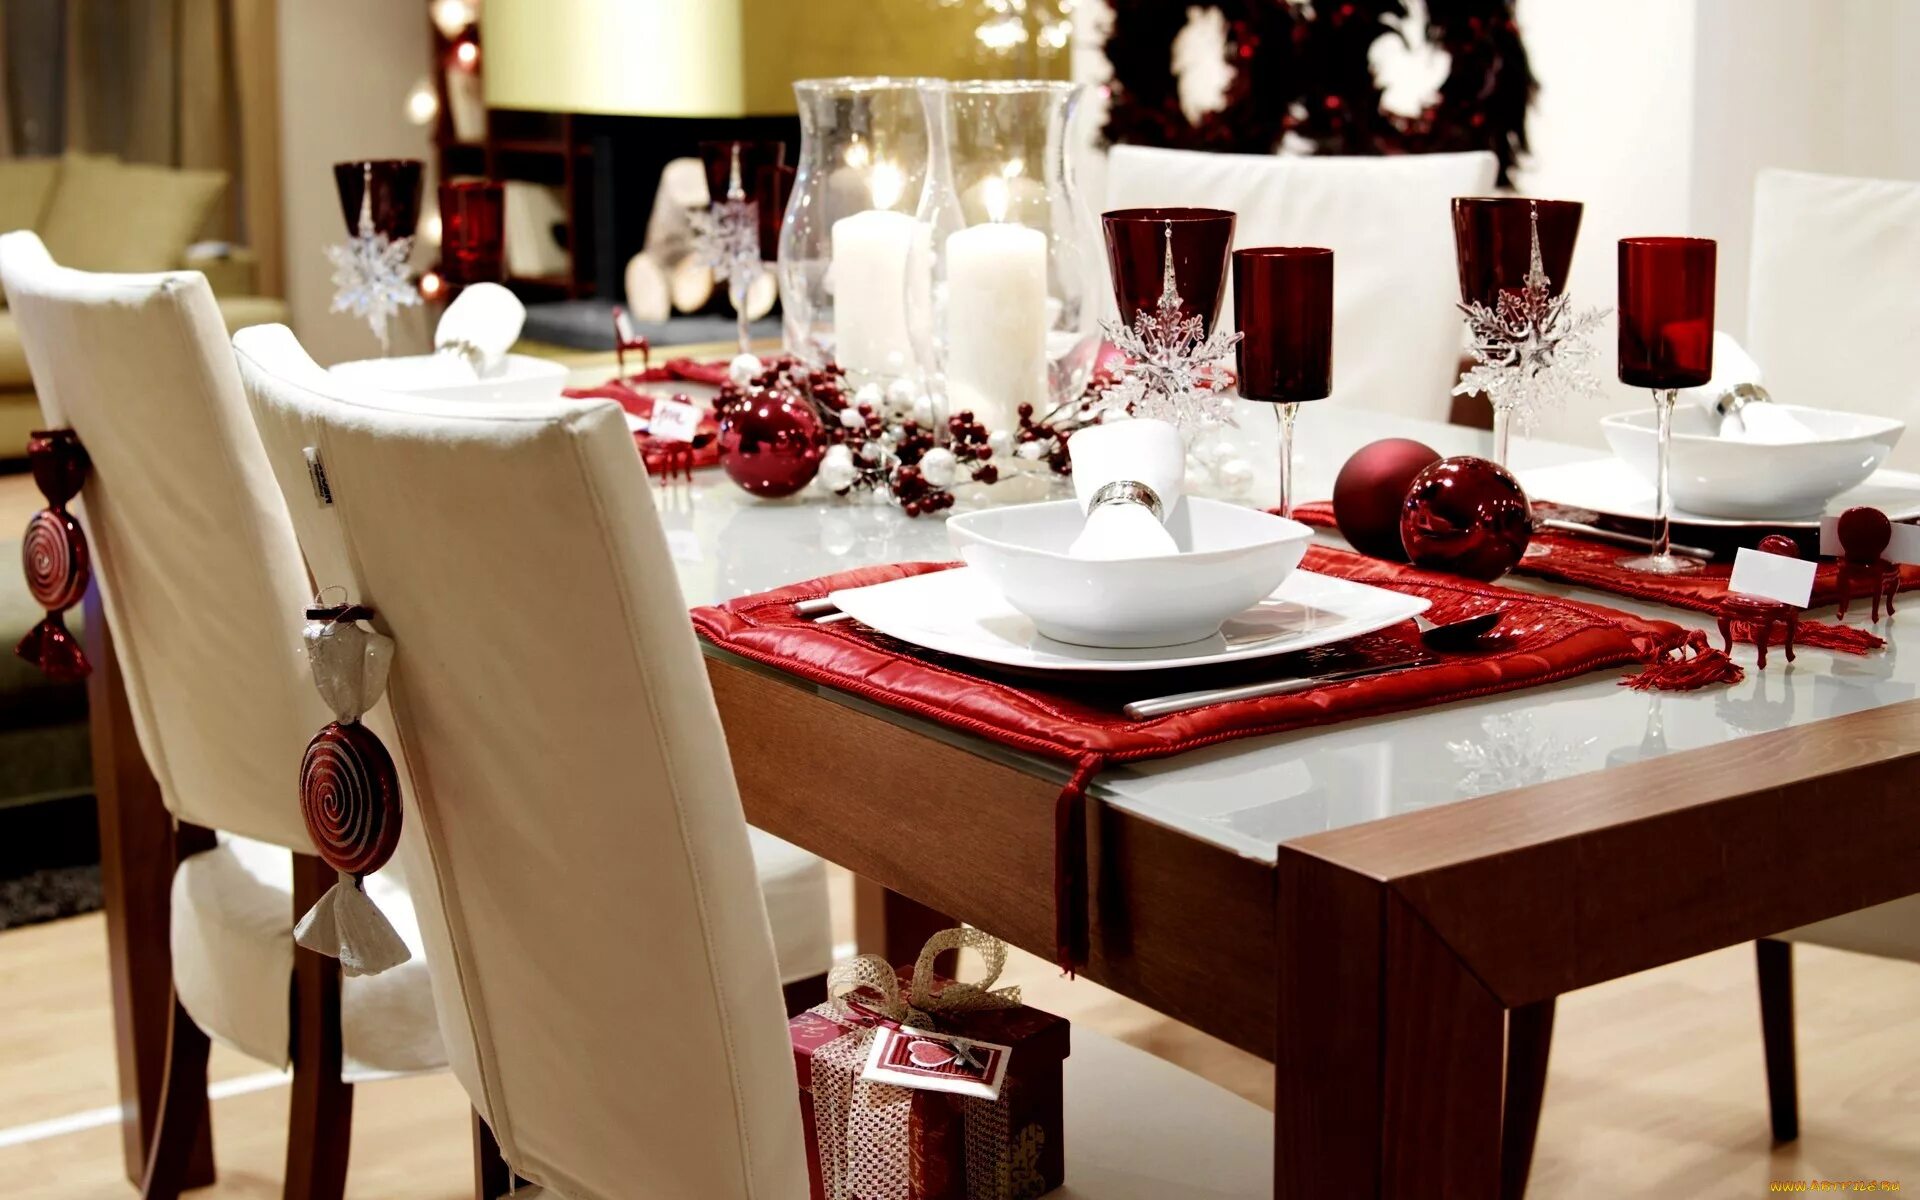 Лучшие картинки стола. Сервировка стола. Сервировка новогоднего стола. Сервировка обеденного стола. Красивый стол.